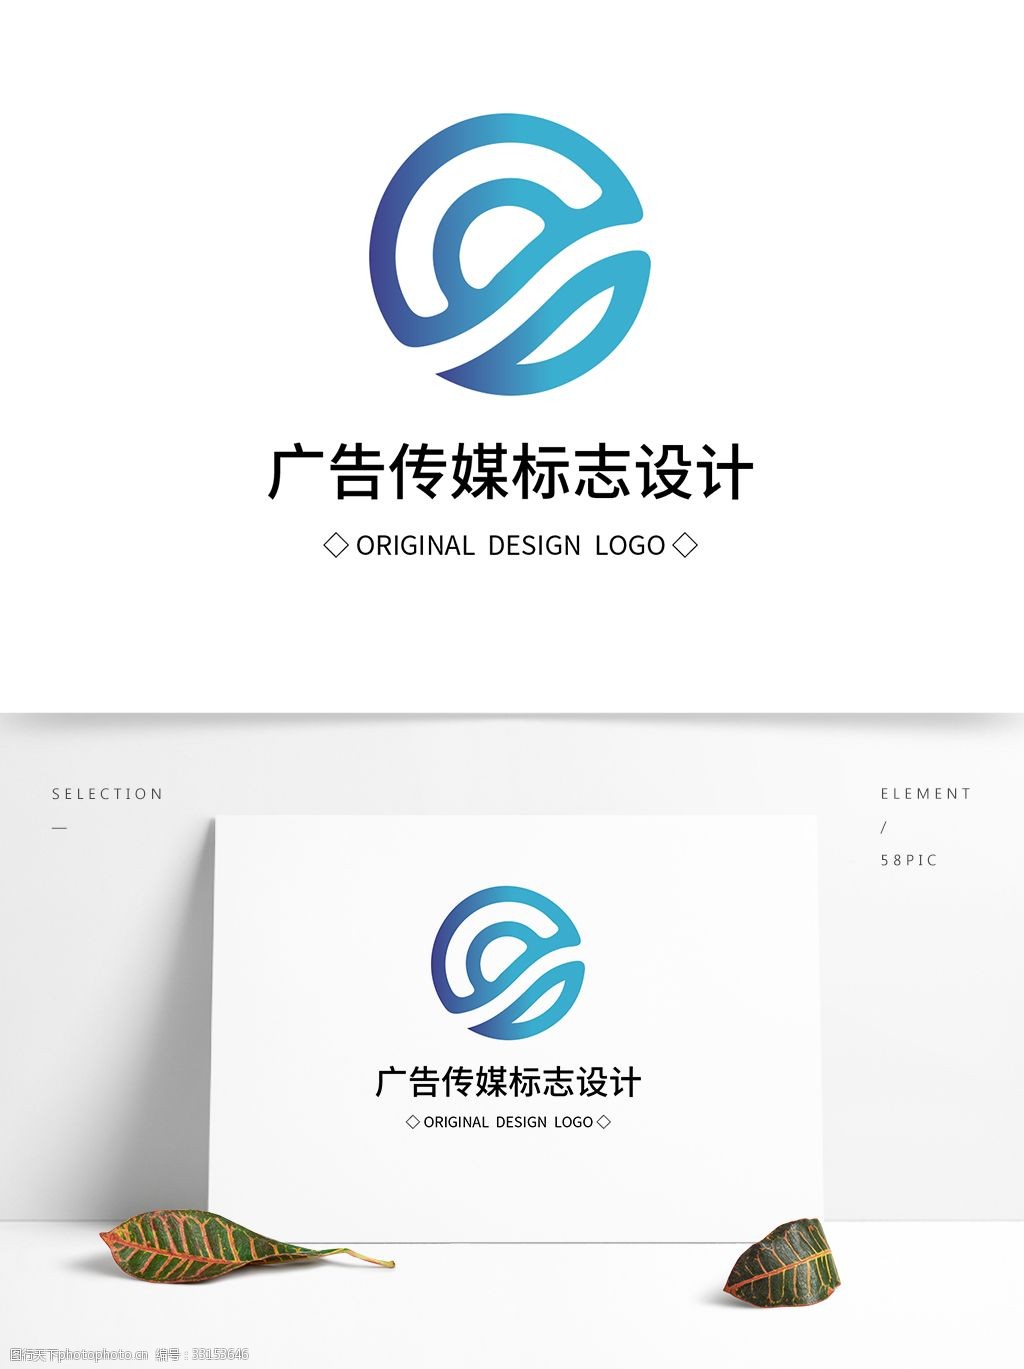 设计图库 标志图标 企业logo标志    上传: 2019-5-12 大小: 1.